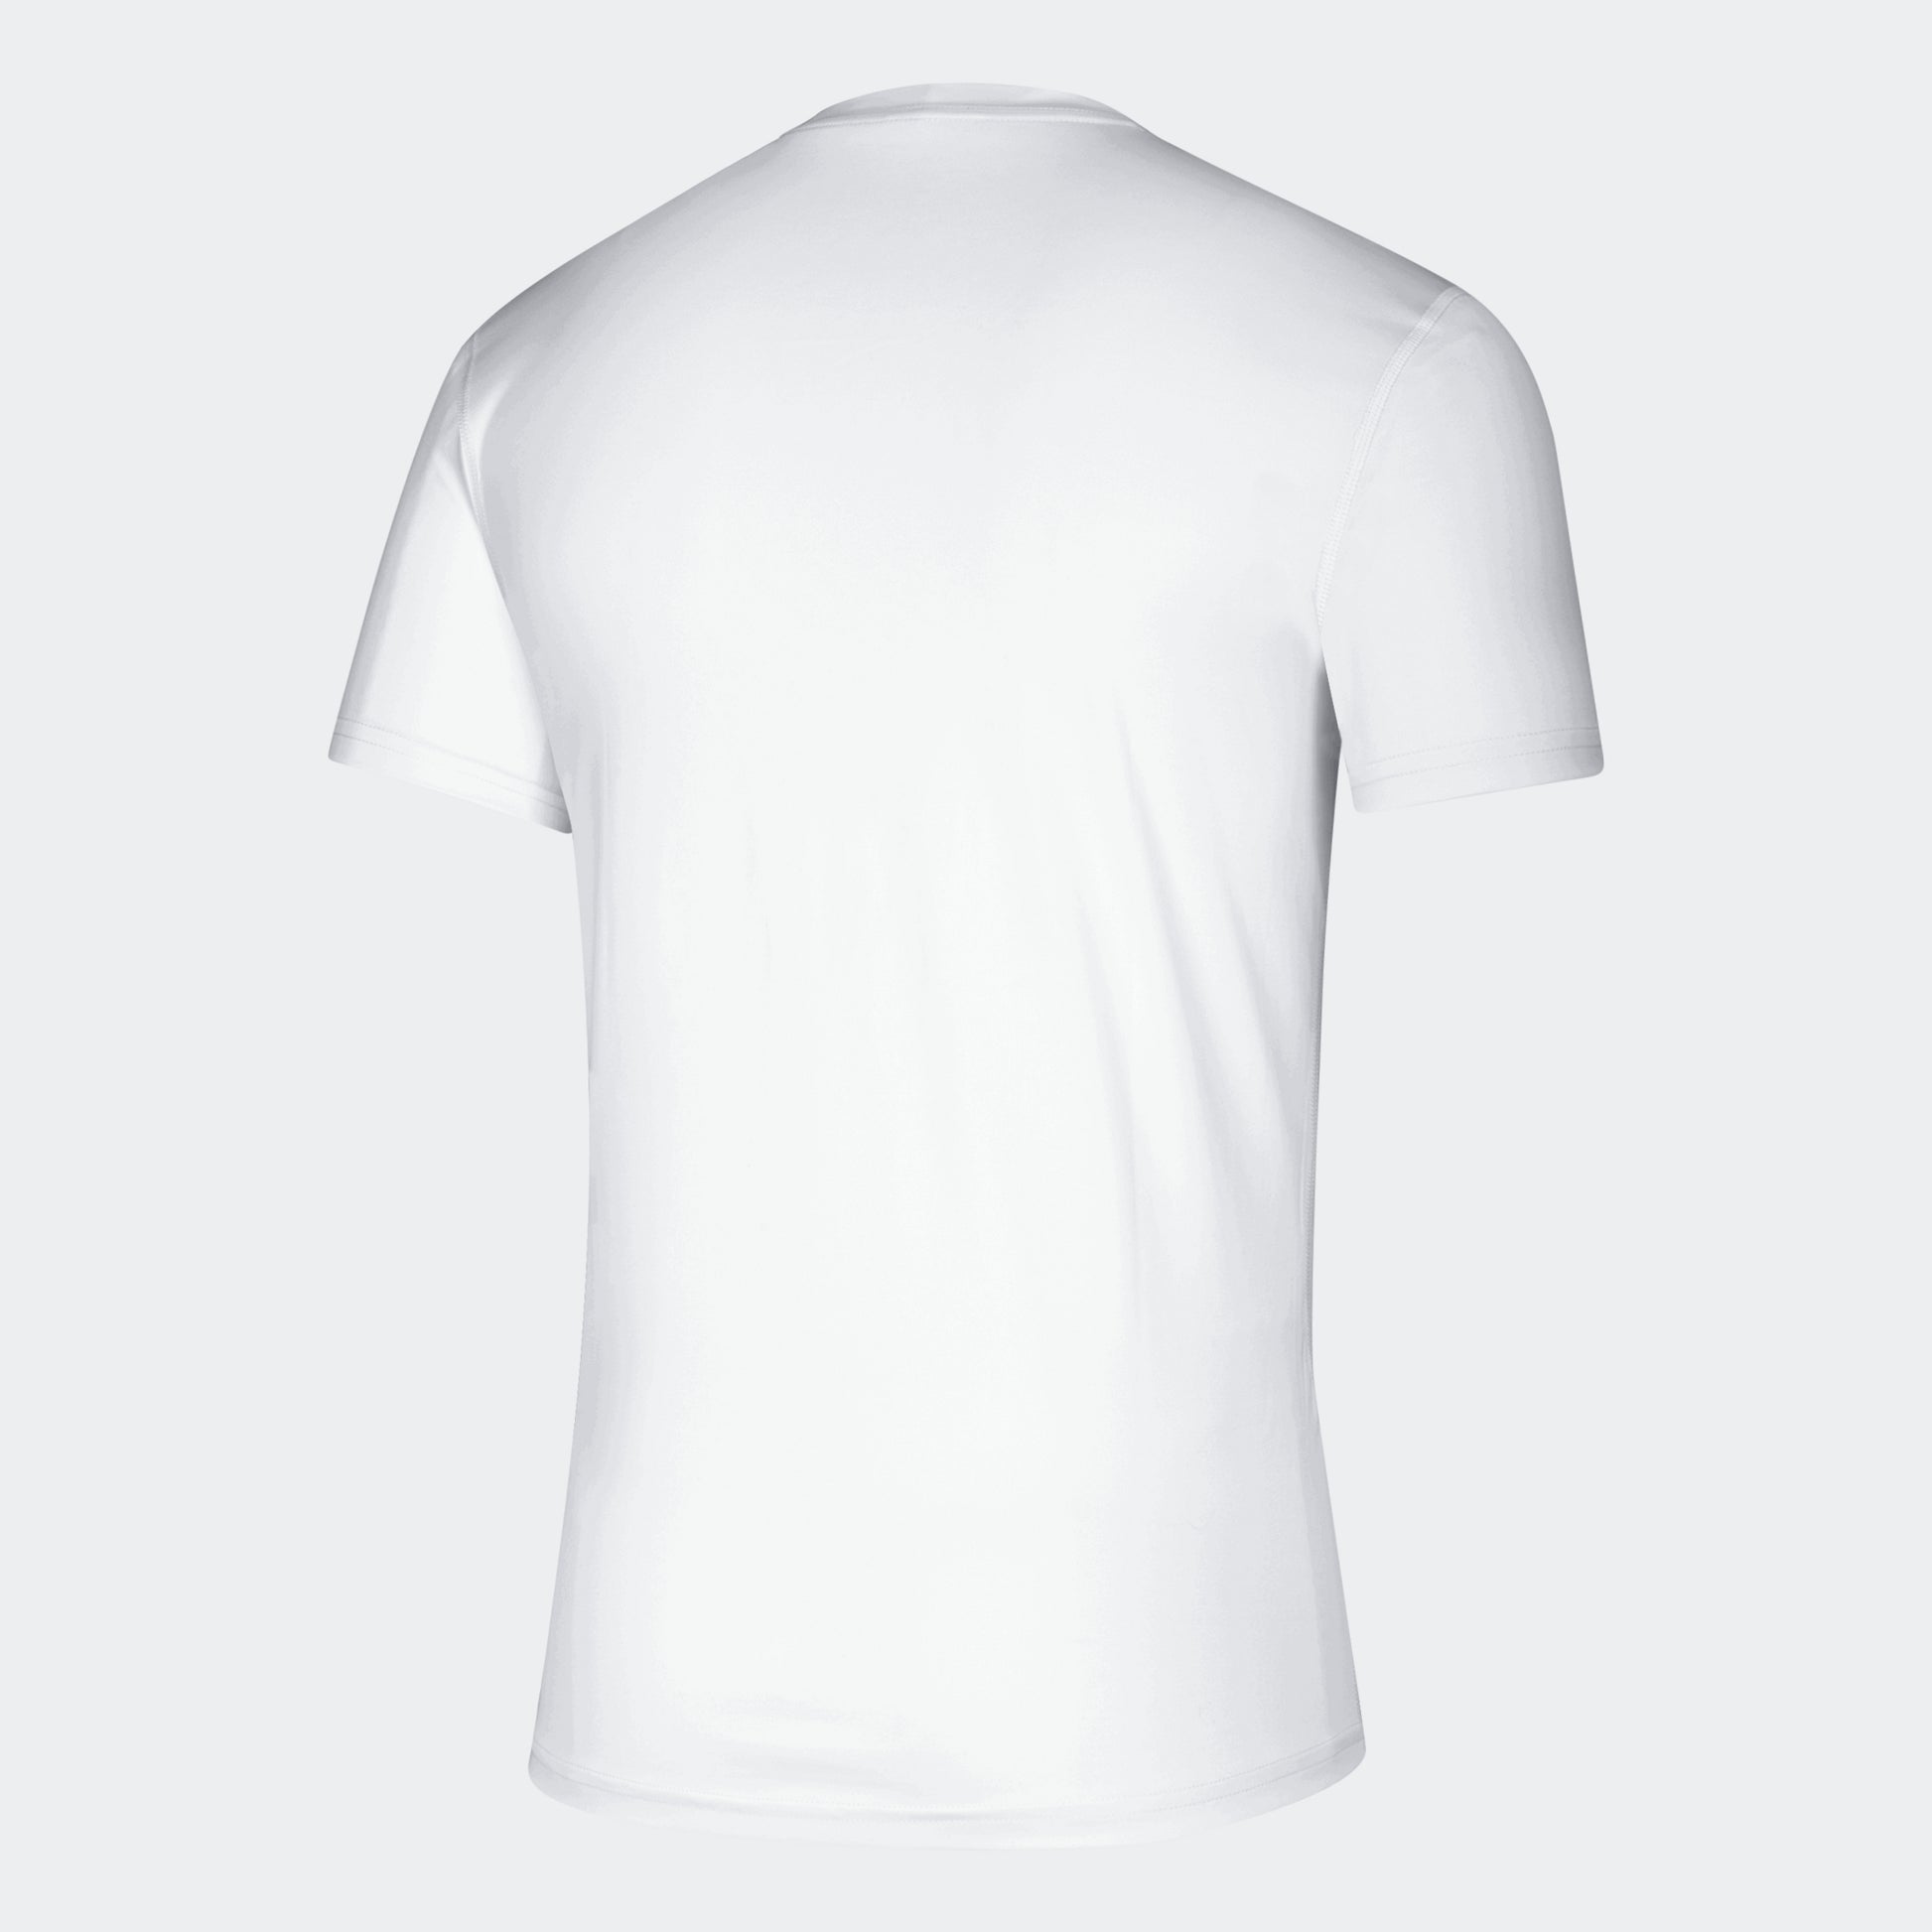 Louisville Cardinals adidas Creator Short Sleeve Shirt Men's Black New 2XLT  478